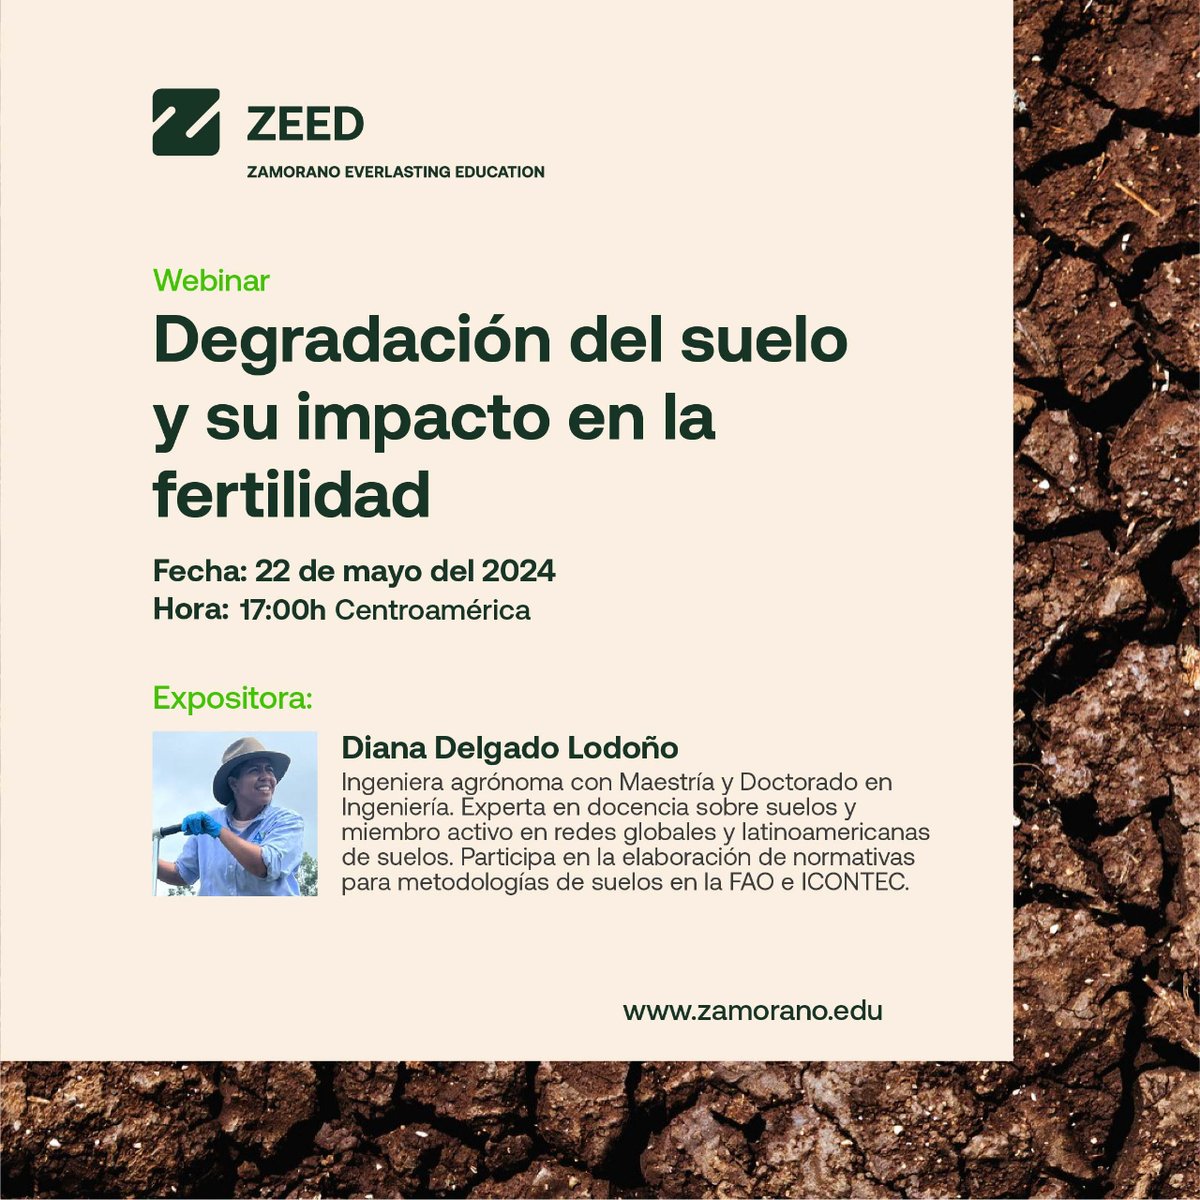 #WebinarAlert🚨 | 🌿 'Degradación del suelo' webinar por Diana Delgado en #Zamorano 📅 22 mayo, 17h. ¡Inscríbete! 🔗➡️ lc.cx/fyI5K2 #zamorano #webinar #suelos #fertilidaddesuelos #aprendeconzamorano #aprendizaje